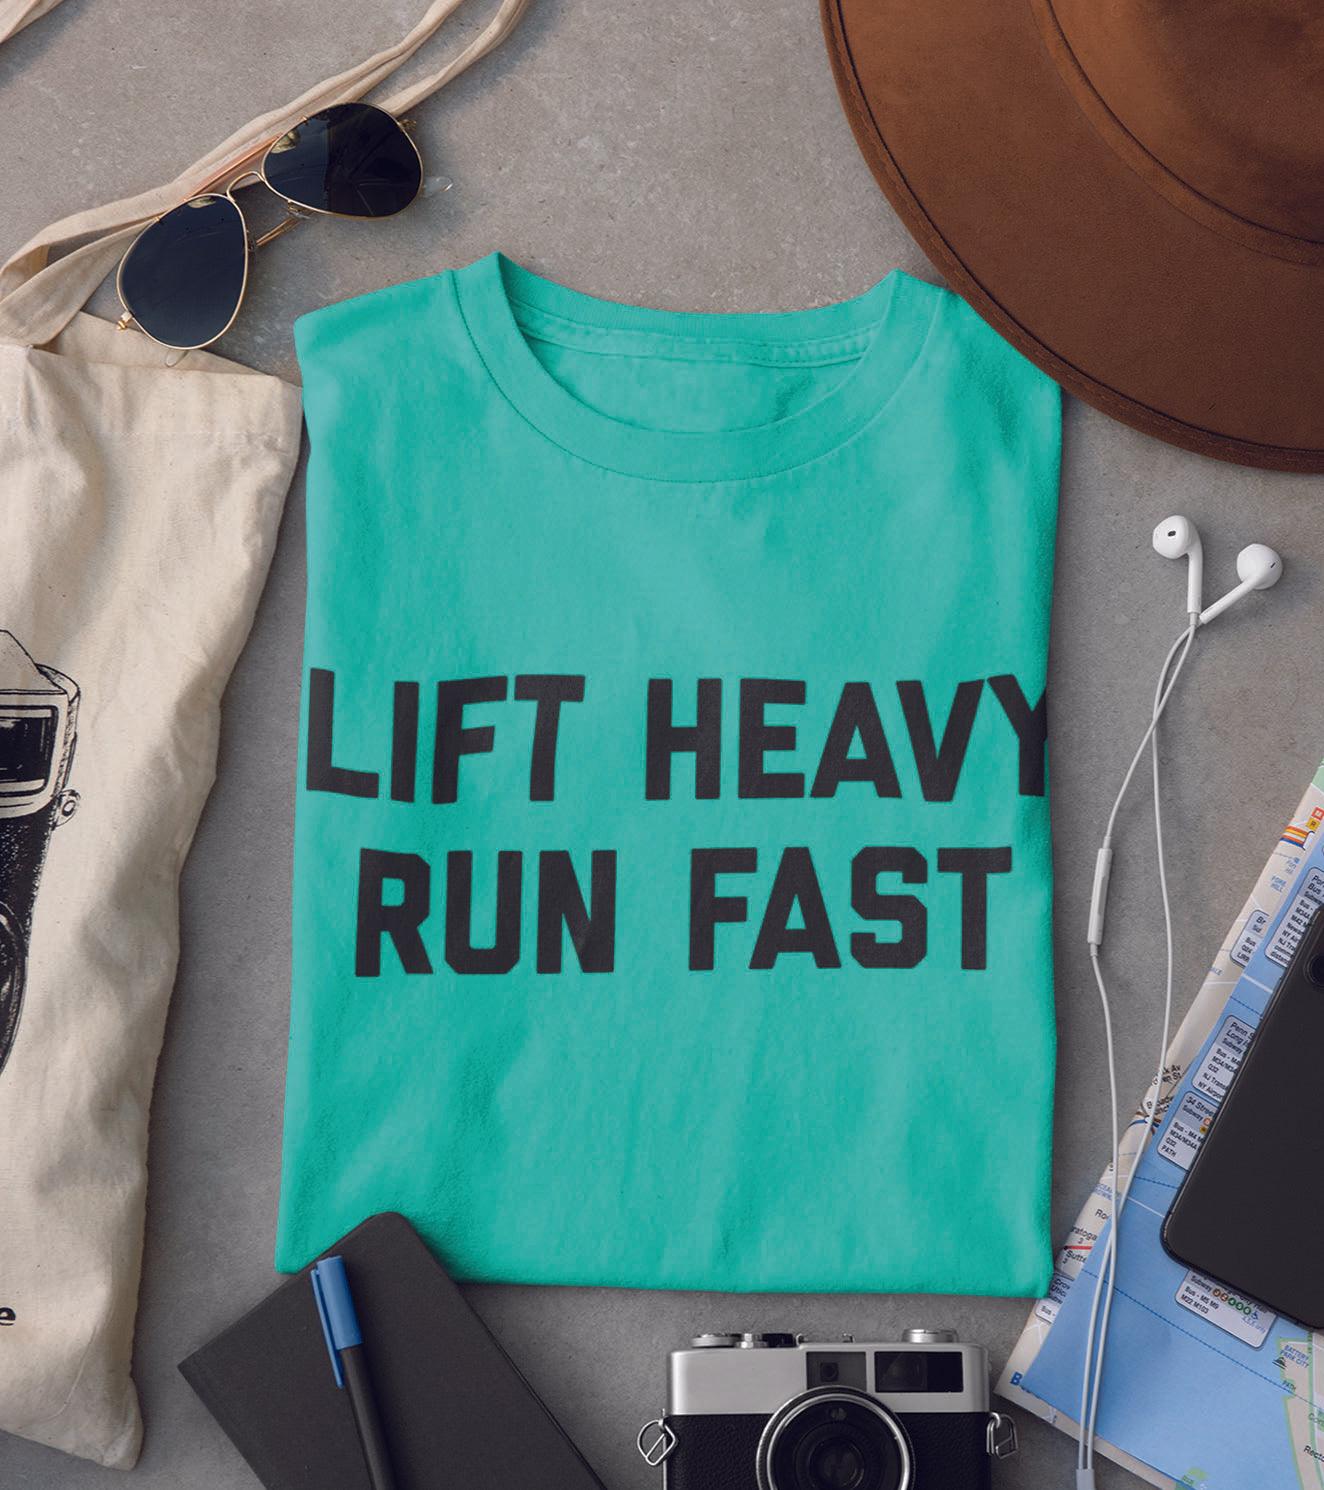 Men's Run Fast Lift Heavy T-shirt (Ocean Green) - wodarmour